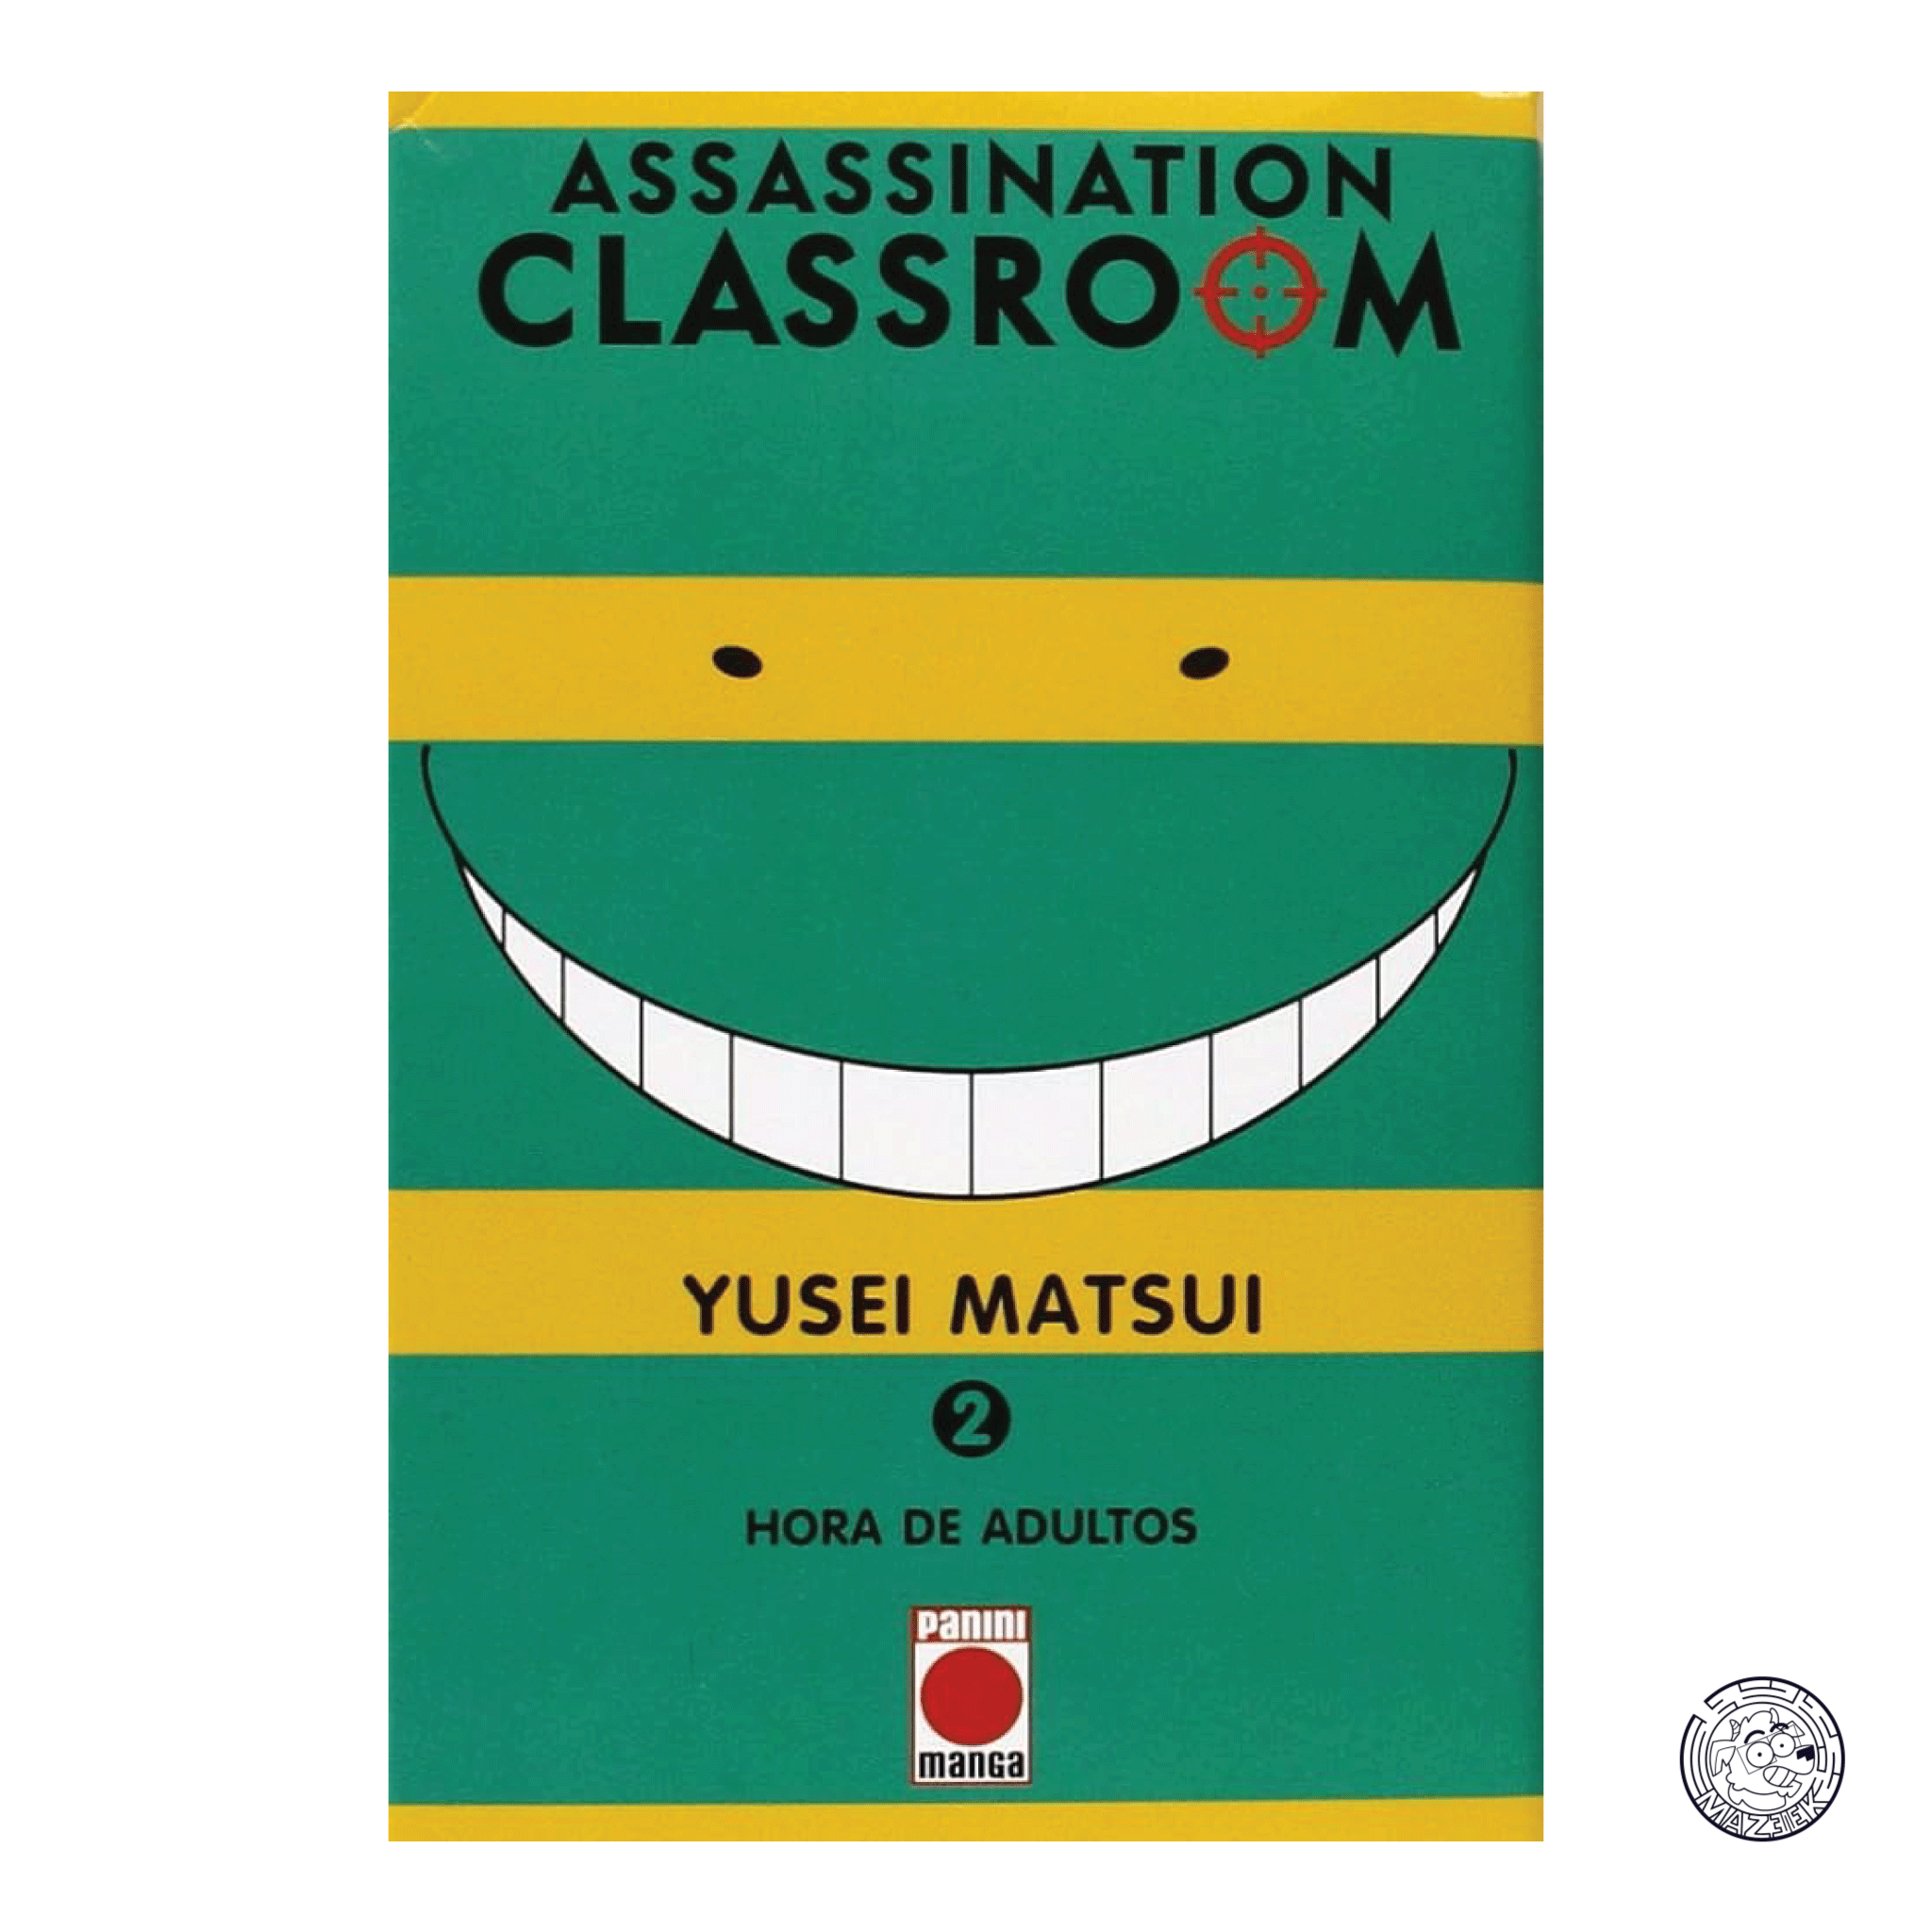 Assassination Classroom 02 - Reprint 3